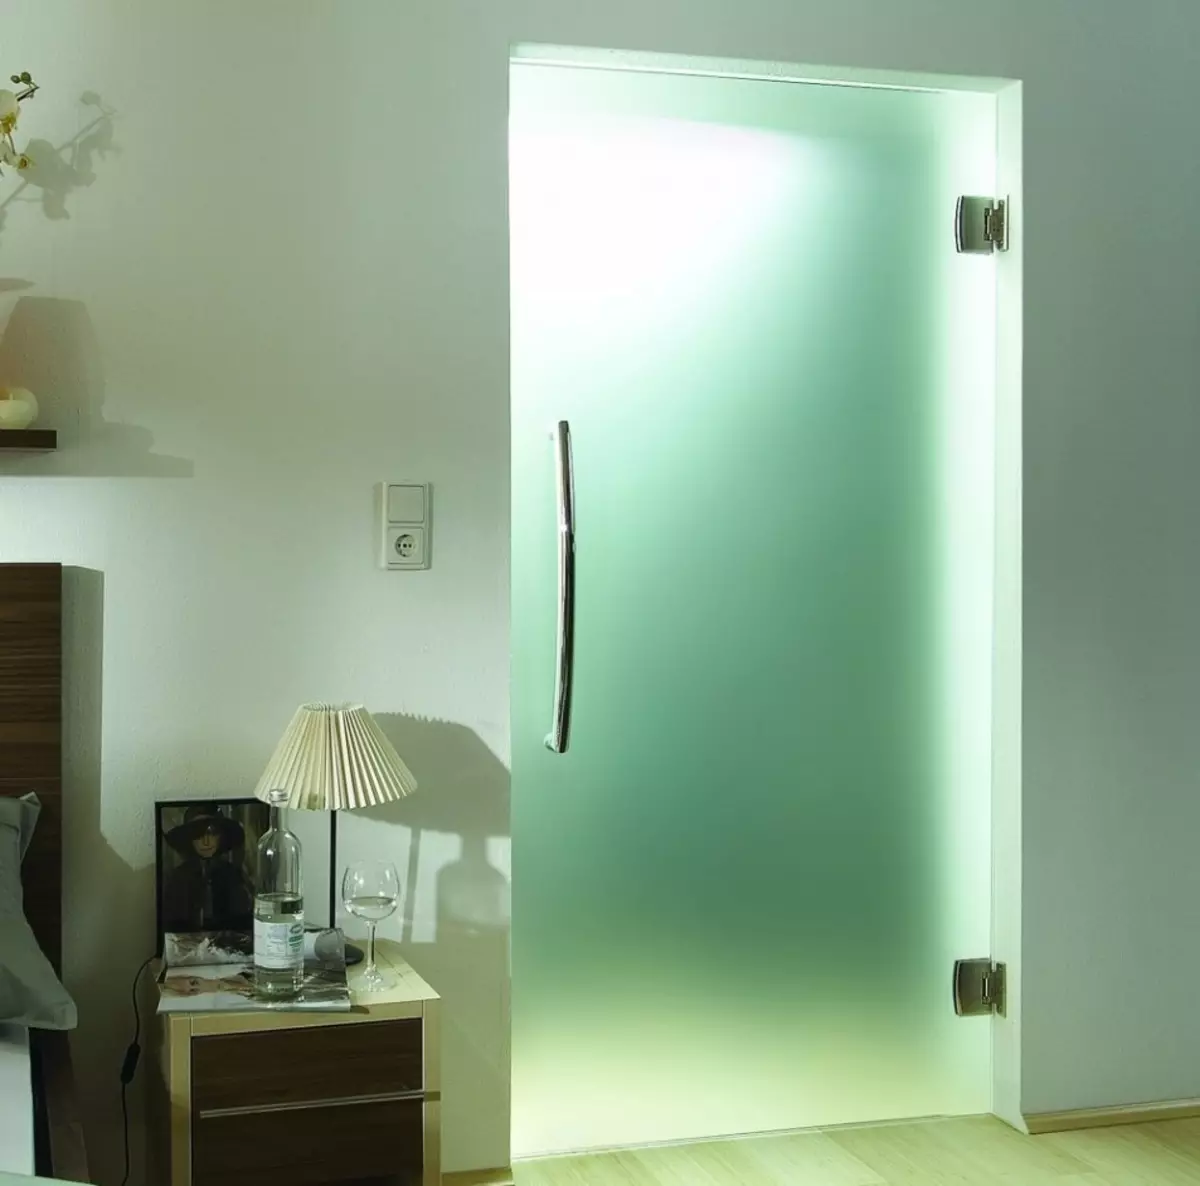 Купить матовое стекло для двери. Стеклянная дверь. Стеклянная дверь в ванную комнату. Стеклянные двери межкомнатные. Стеклянная матовая дверь в ванную.